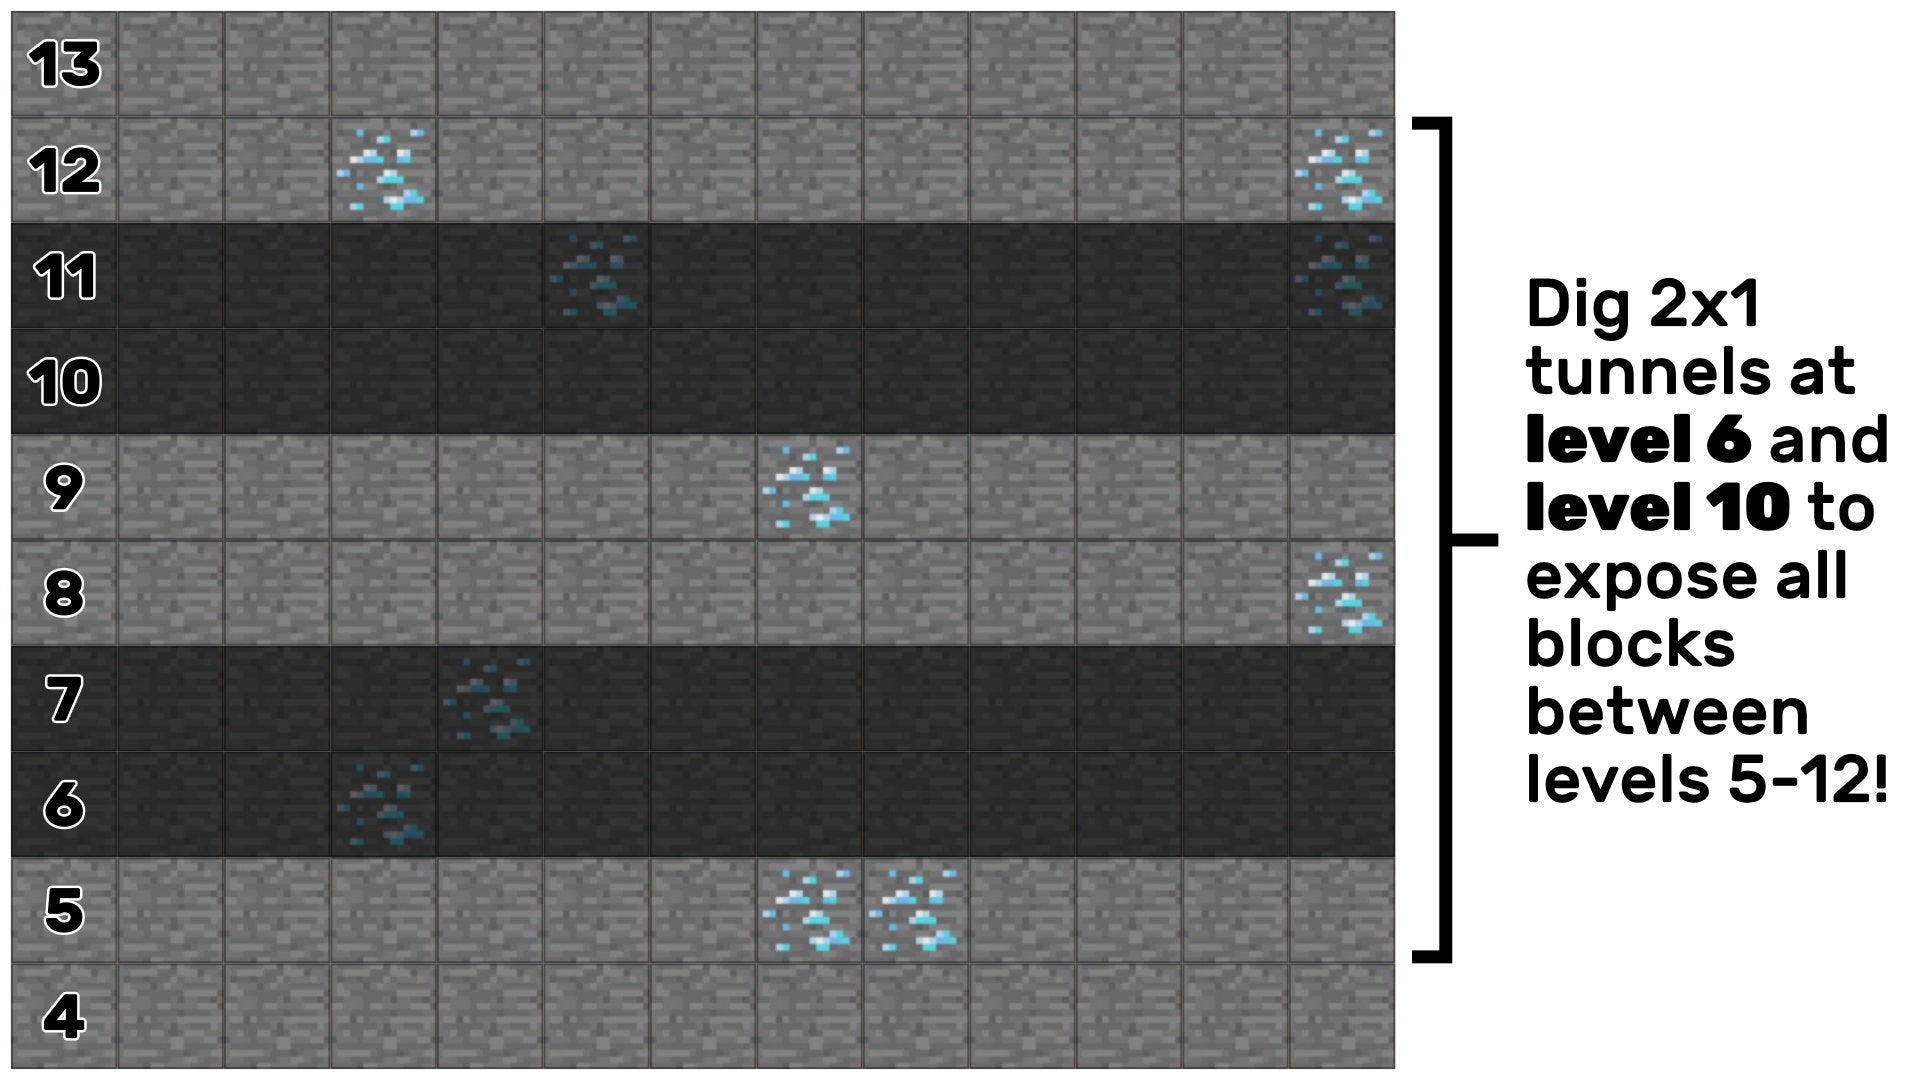 Una maqueta de Minecraft 2D que muestra que dos túneles de 2x1 minados en el nivel 6 y el nivel 10 expondrán todos los bloques entre los niveles 5-12.